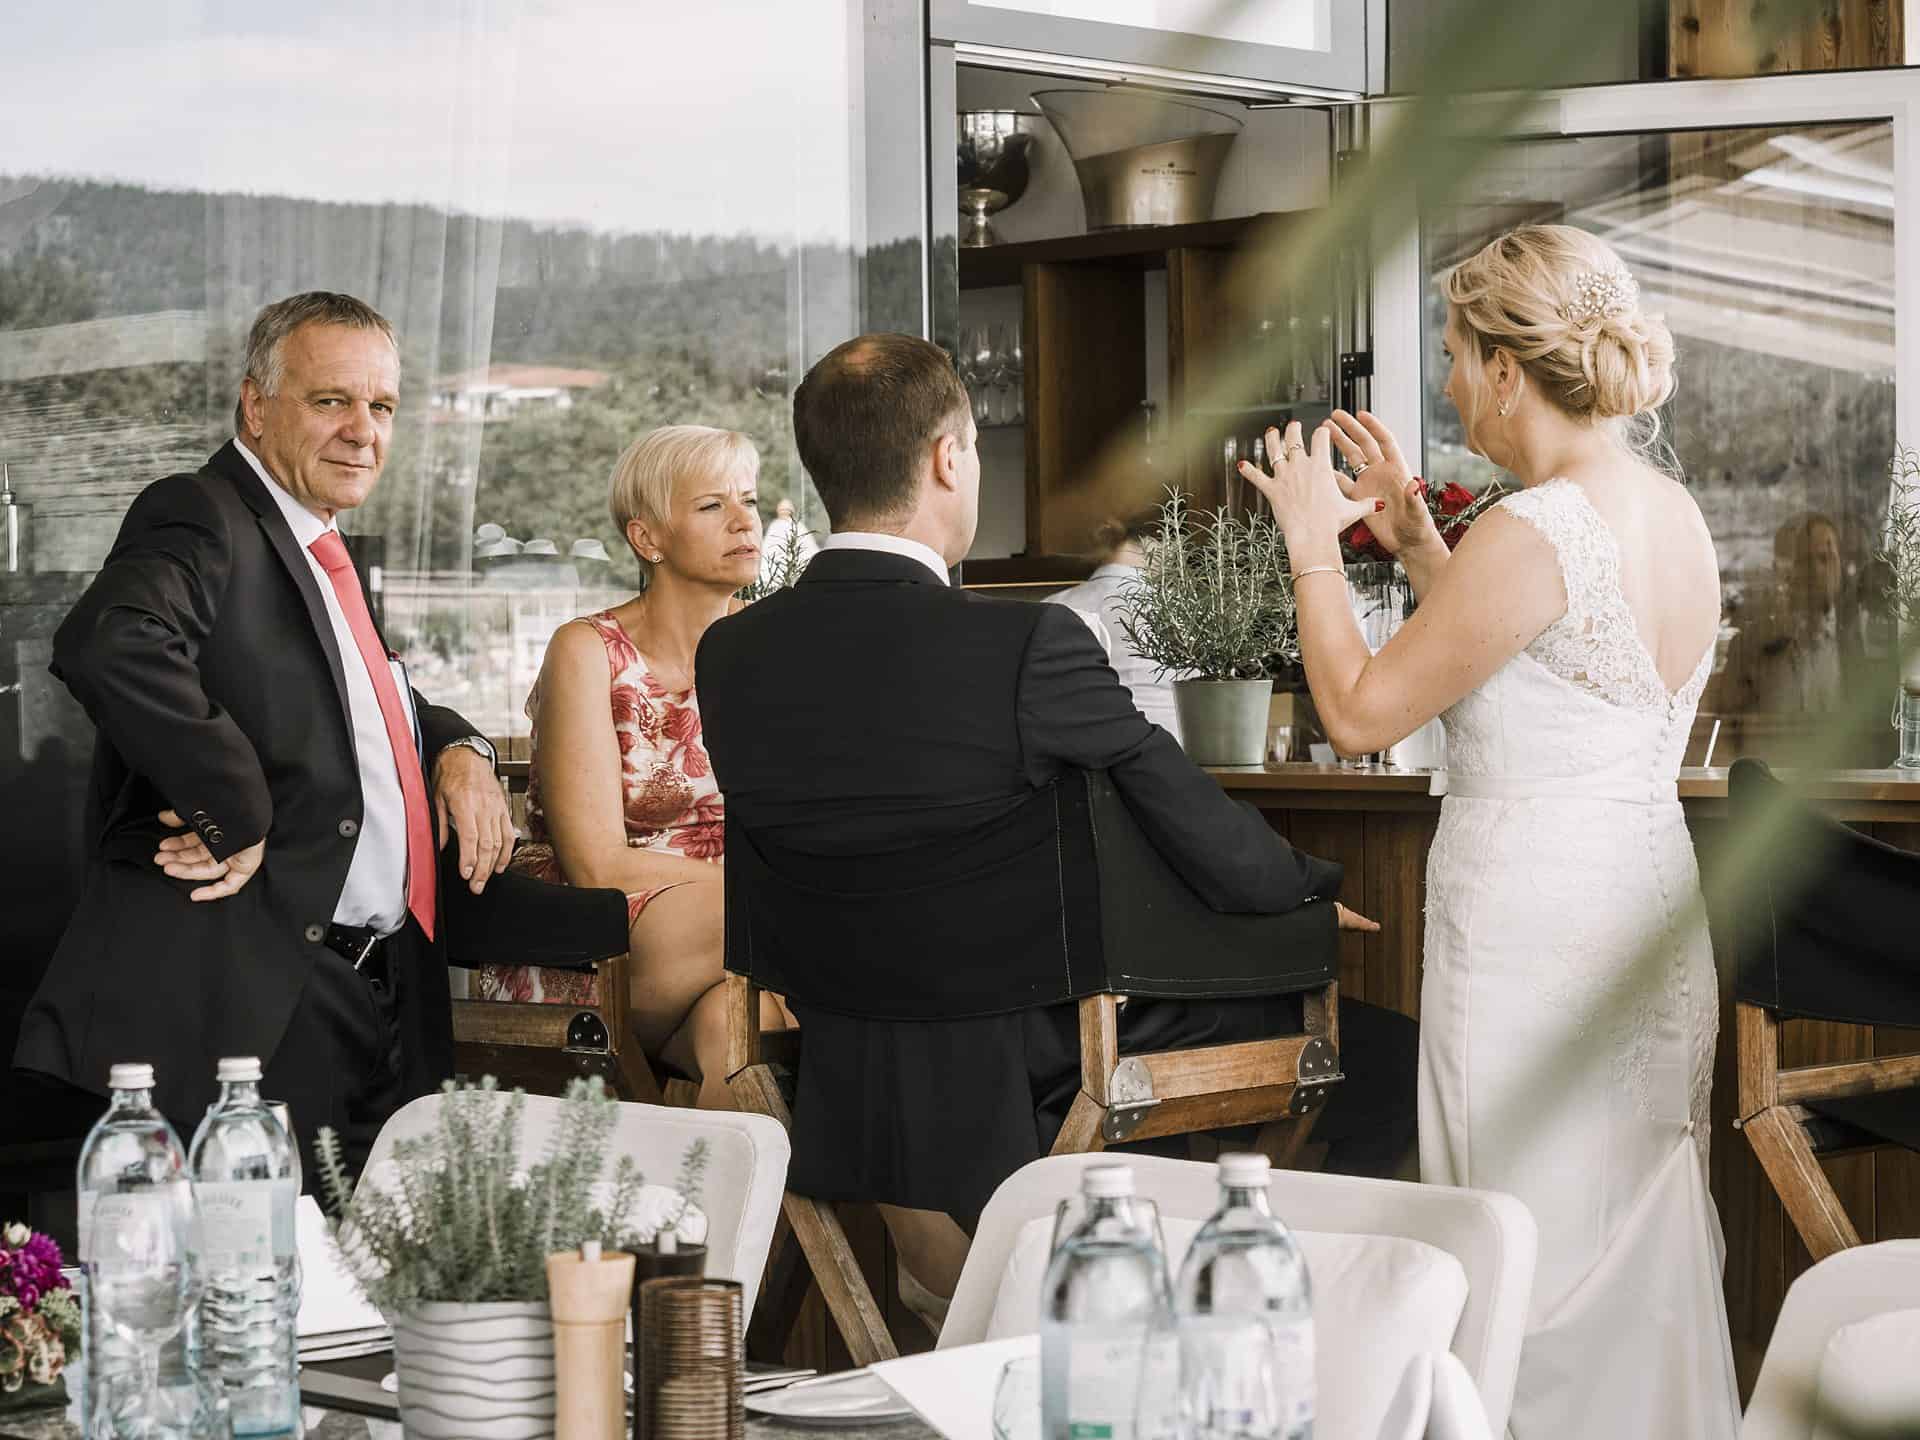 Eine Braut und ein Bräutigam stoßen bei einem Hochzeitsempfang an.